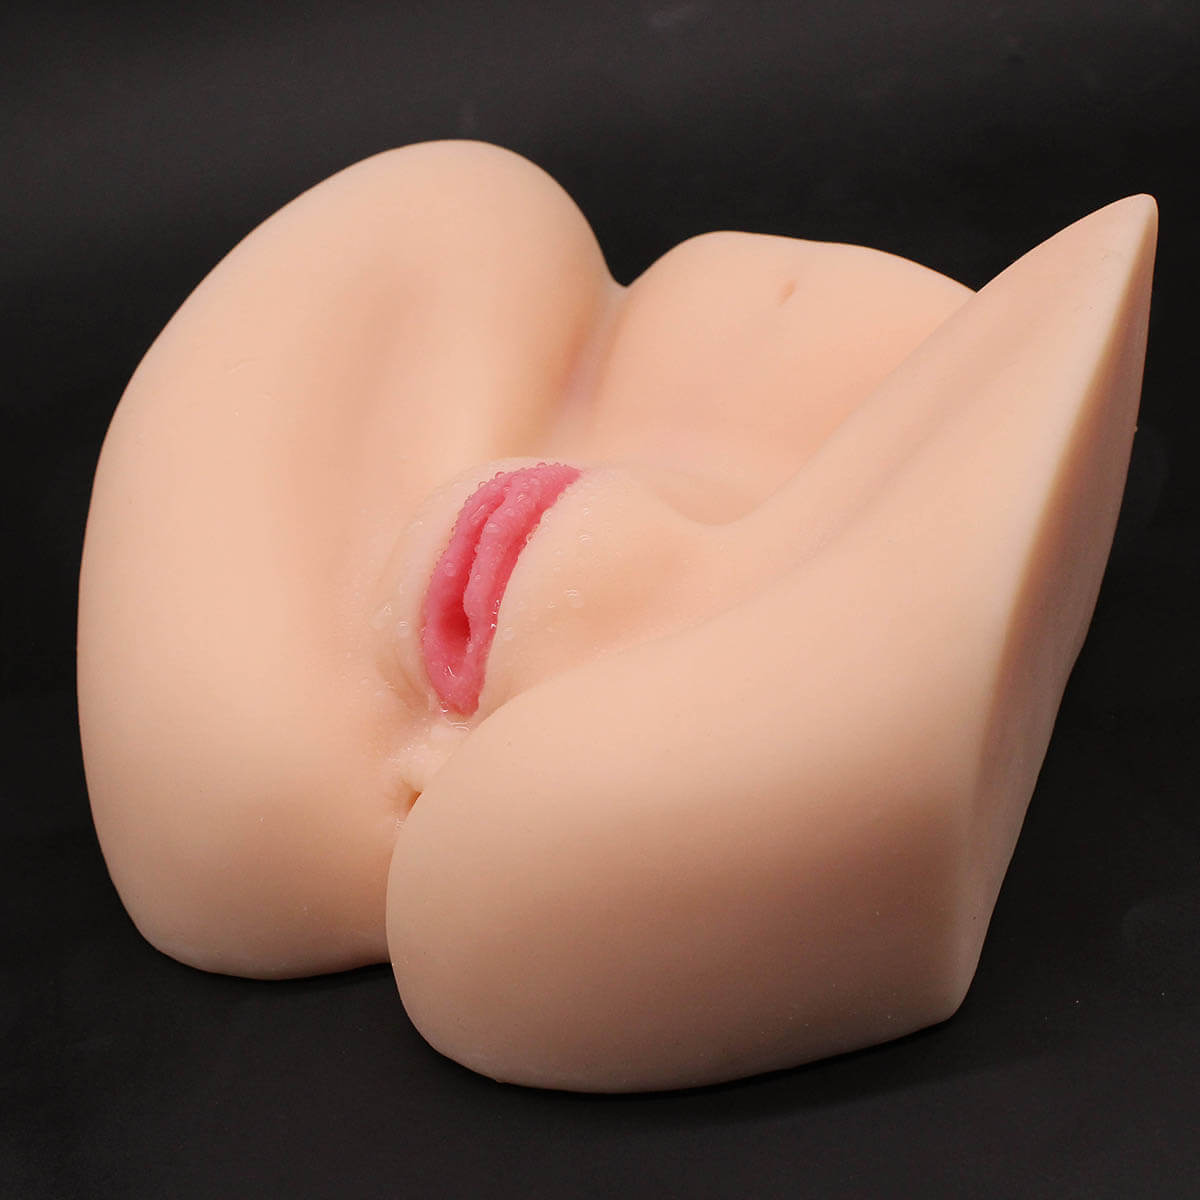 Women Vaginal For Men Male Sex Toys